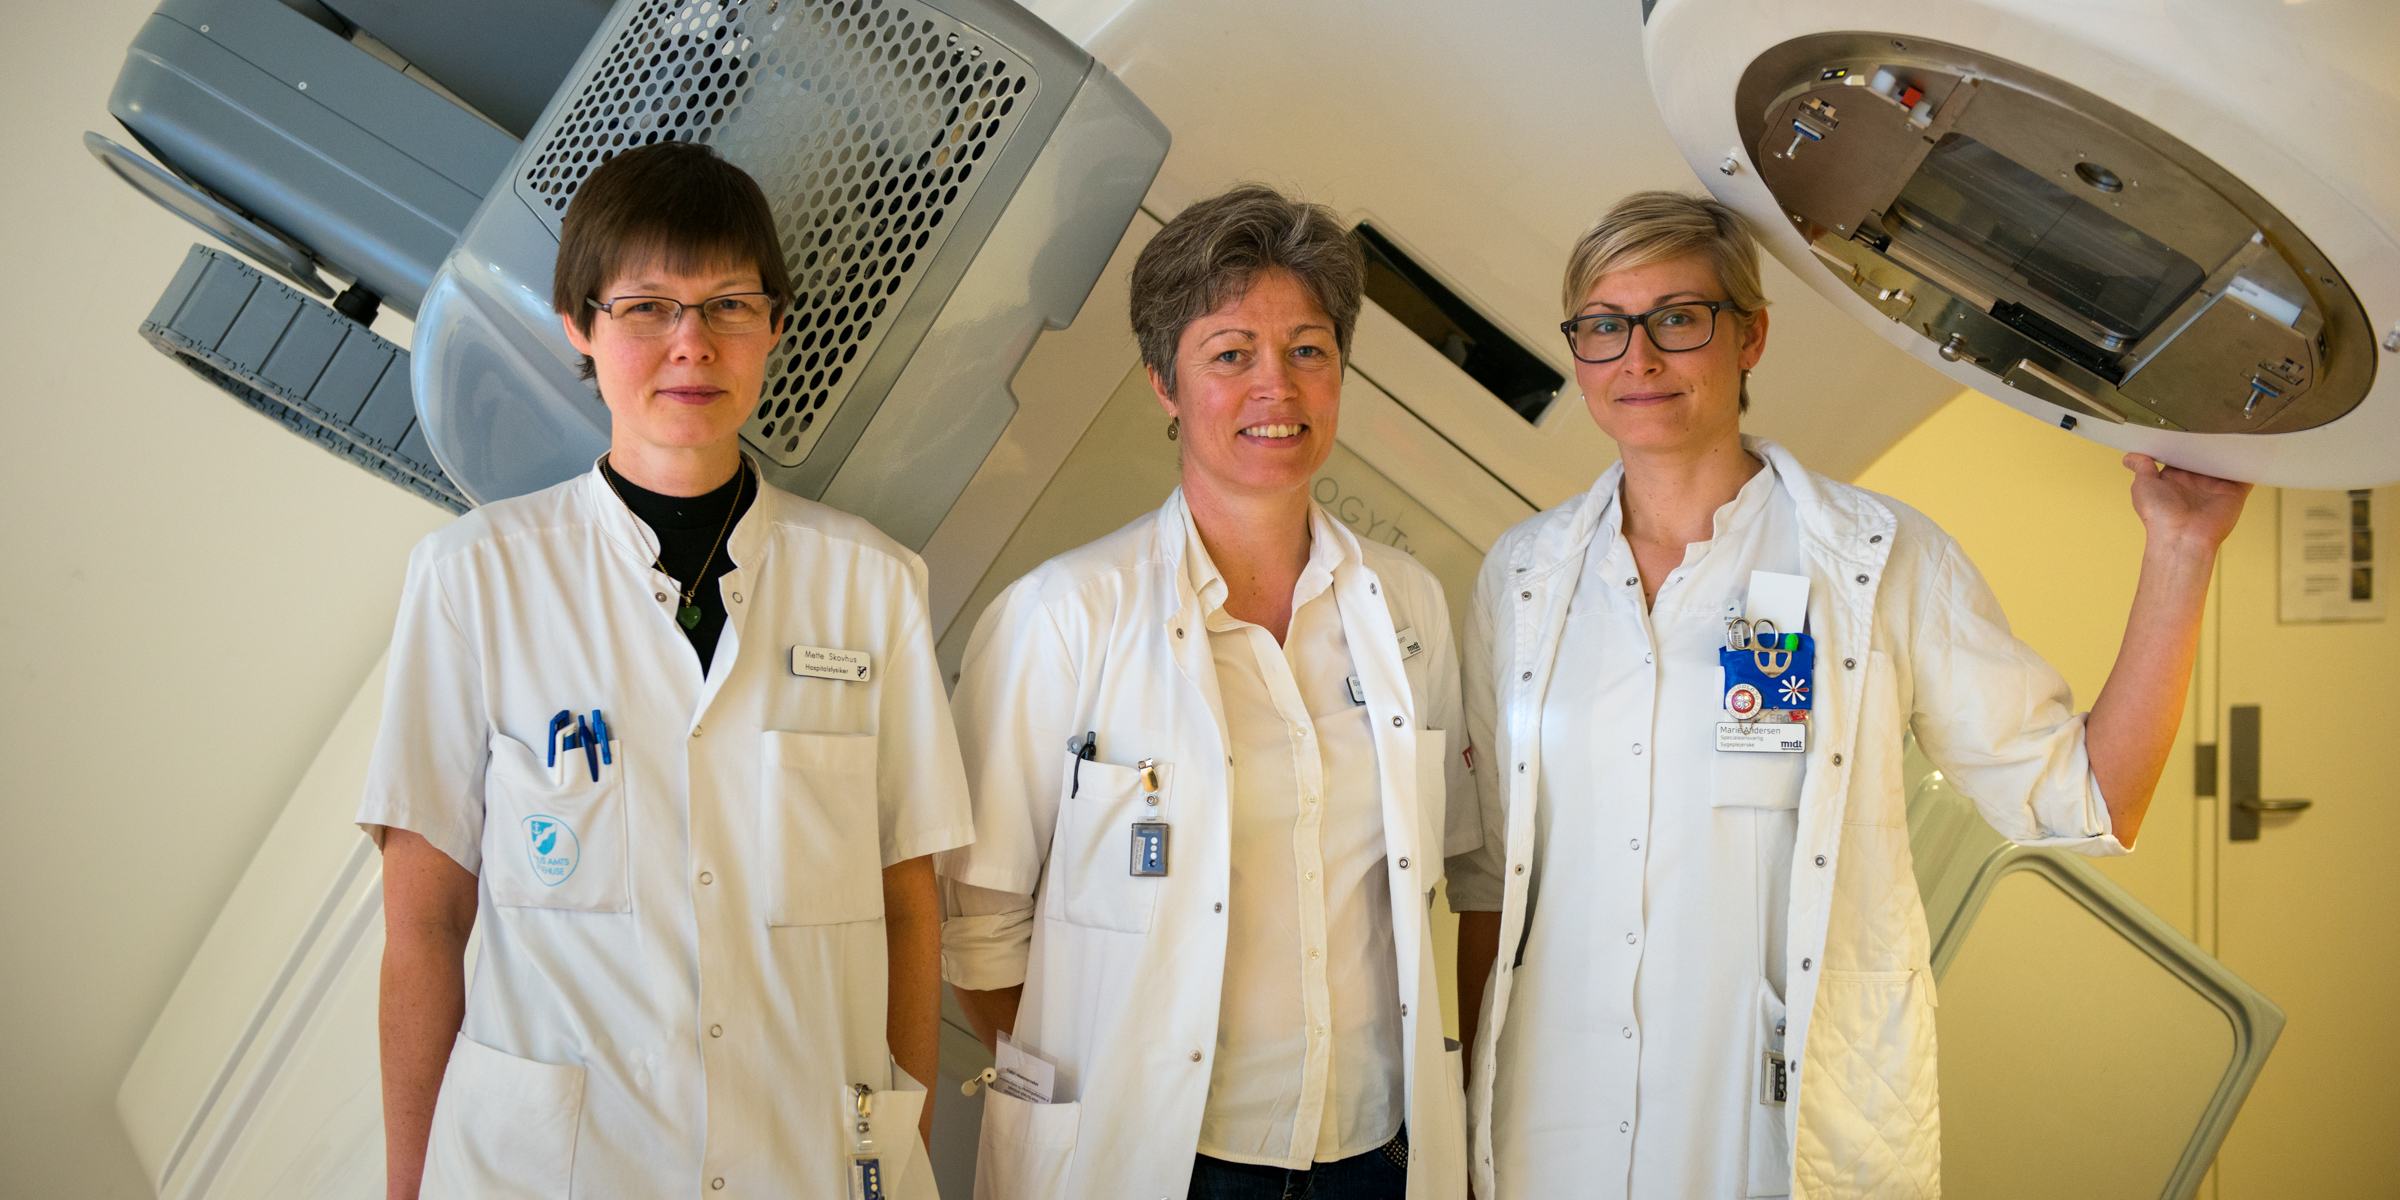 Birgitte Offersen (midten) ses her sammen med ledende hospitalsfysiker Mette Skovhus Thomsen og sygeplejerske Marie Andersen, som begge har haft vigtige roller i forskningsprojektet. Foto: Michael Harders